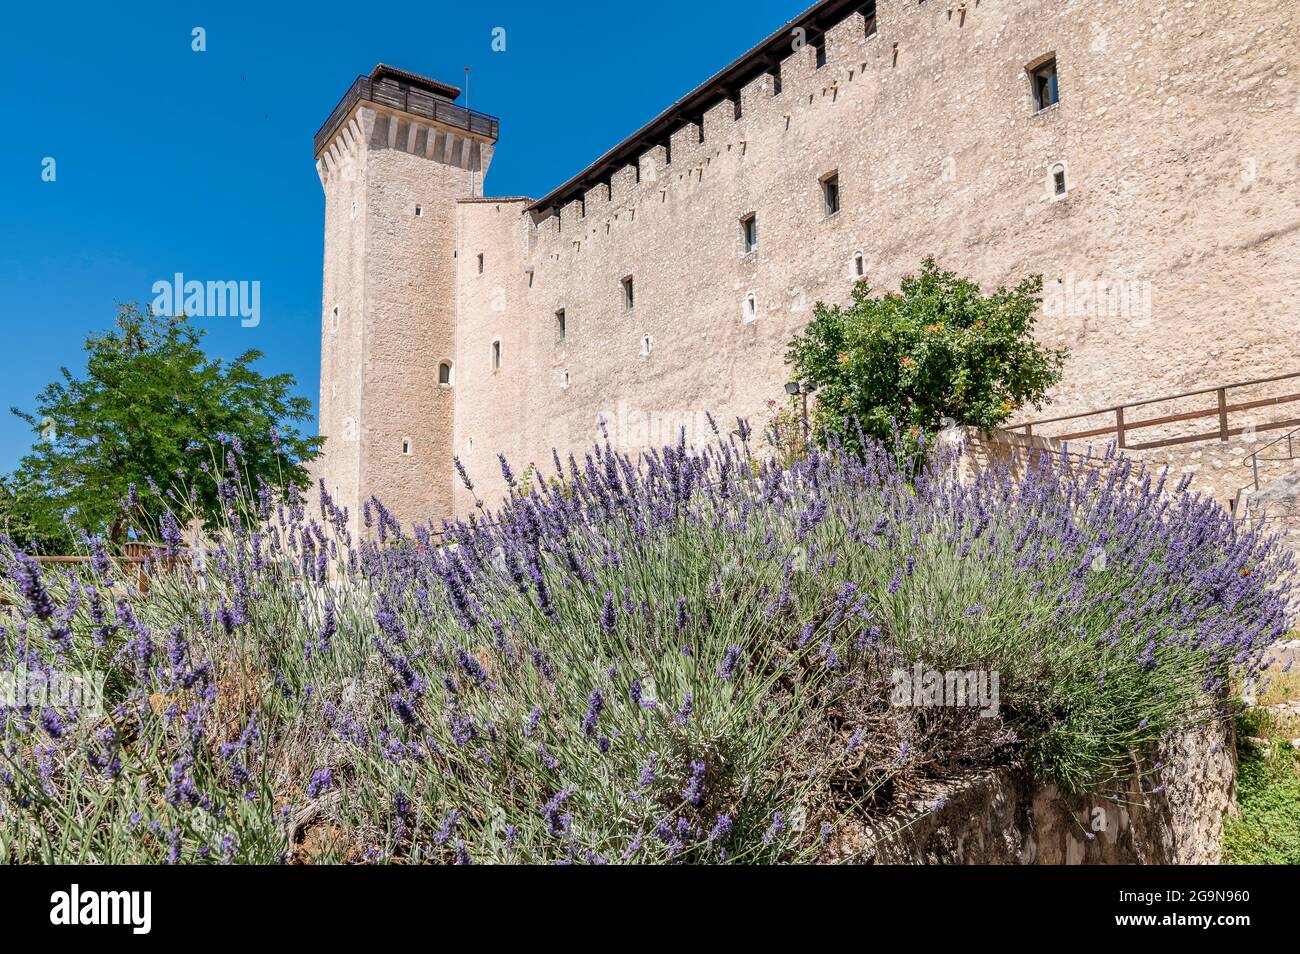 Bellissimi fiori di lavanda alla base delle mura della Rocca Albornoziana  di Spoleto Foto stock - Alamy